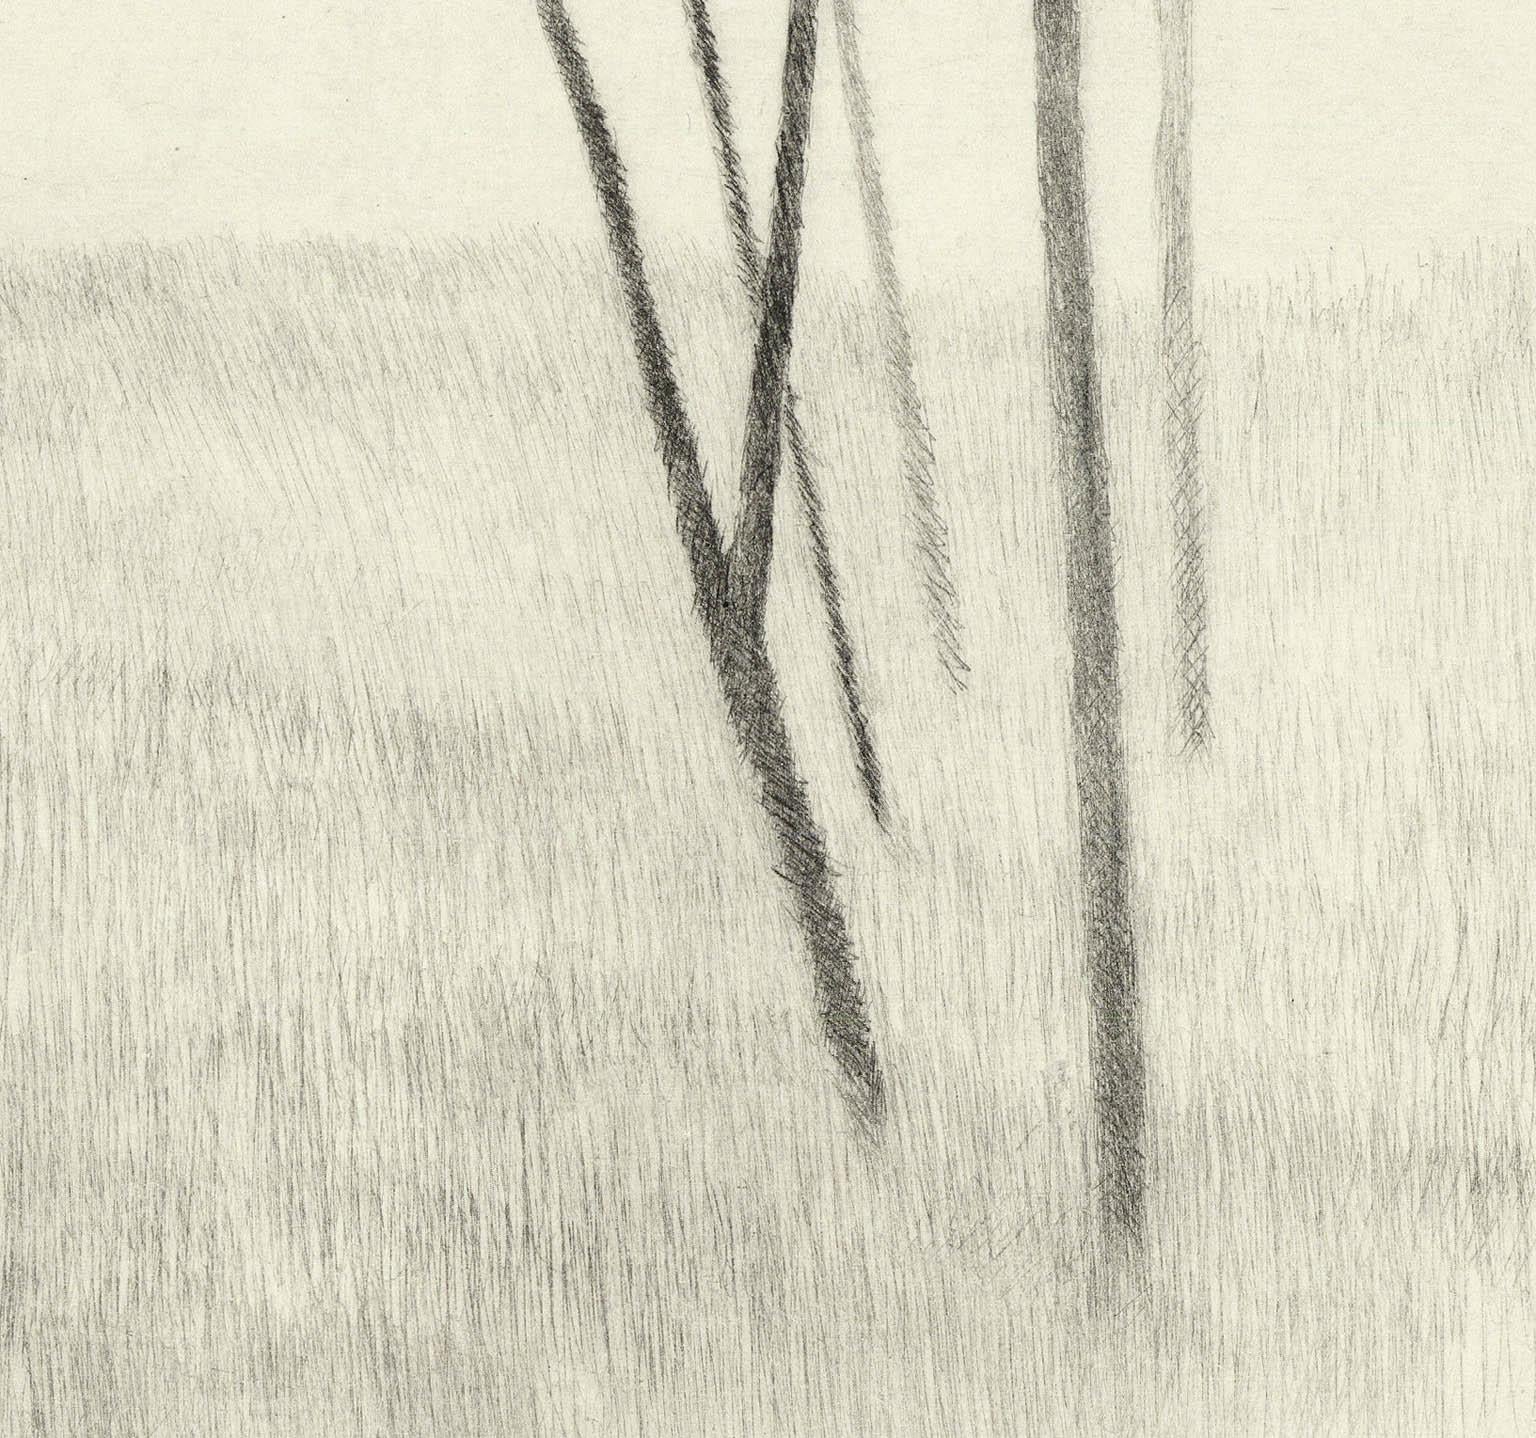 Slope w.five trees - Beige Print by Robert Kipniss